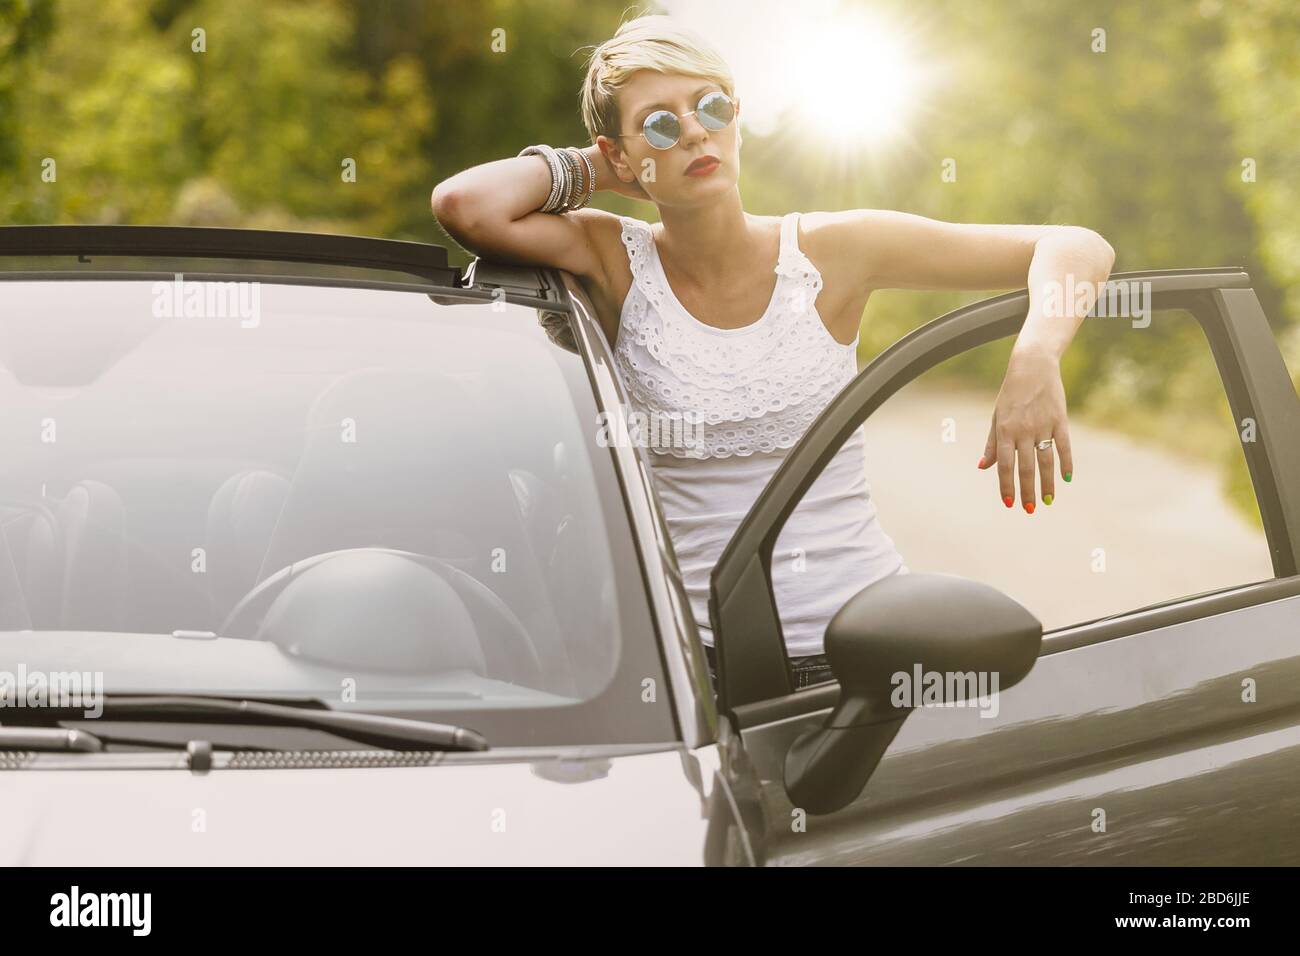 Junge blonde attraktive Frau ist bereit, in ihr Auto geben. Sie öffnet die Tür und bleibt hinter ihr. Stockfoto